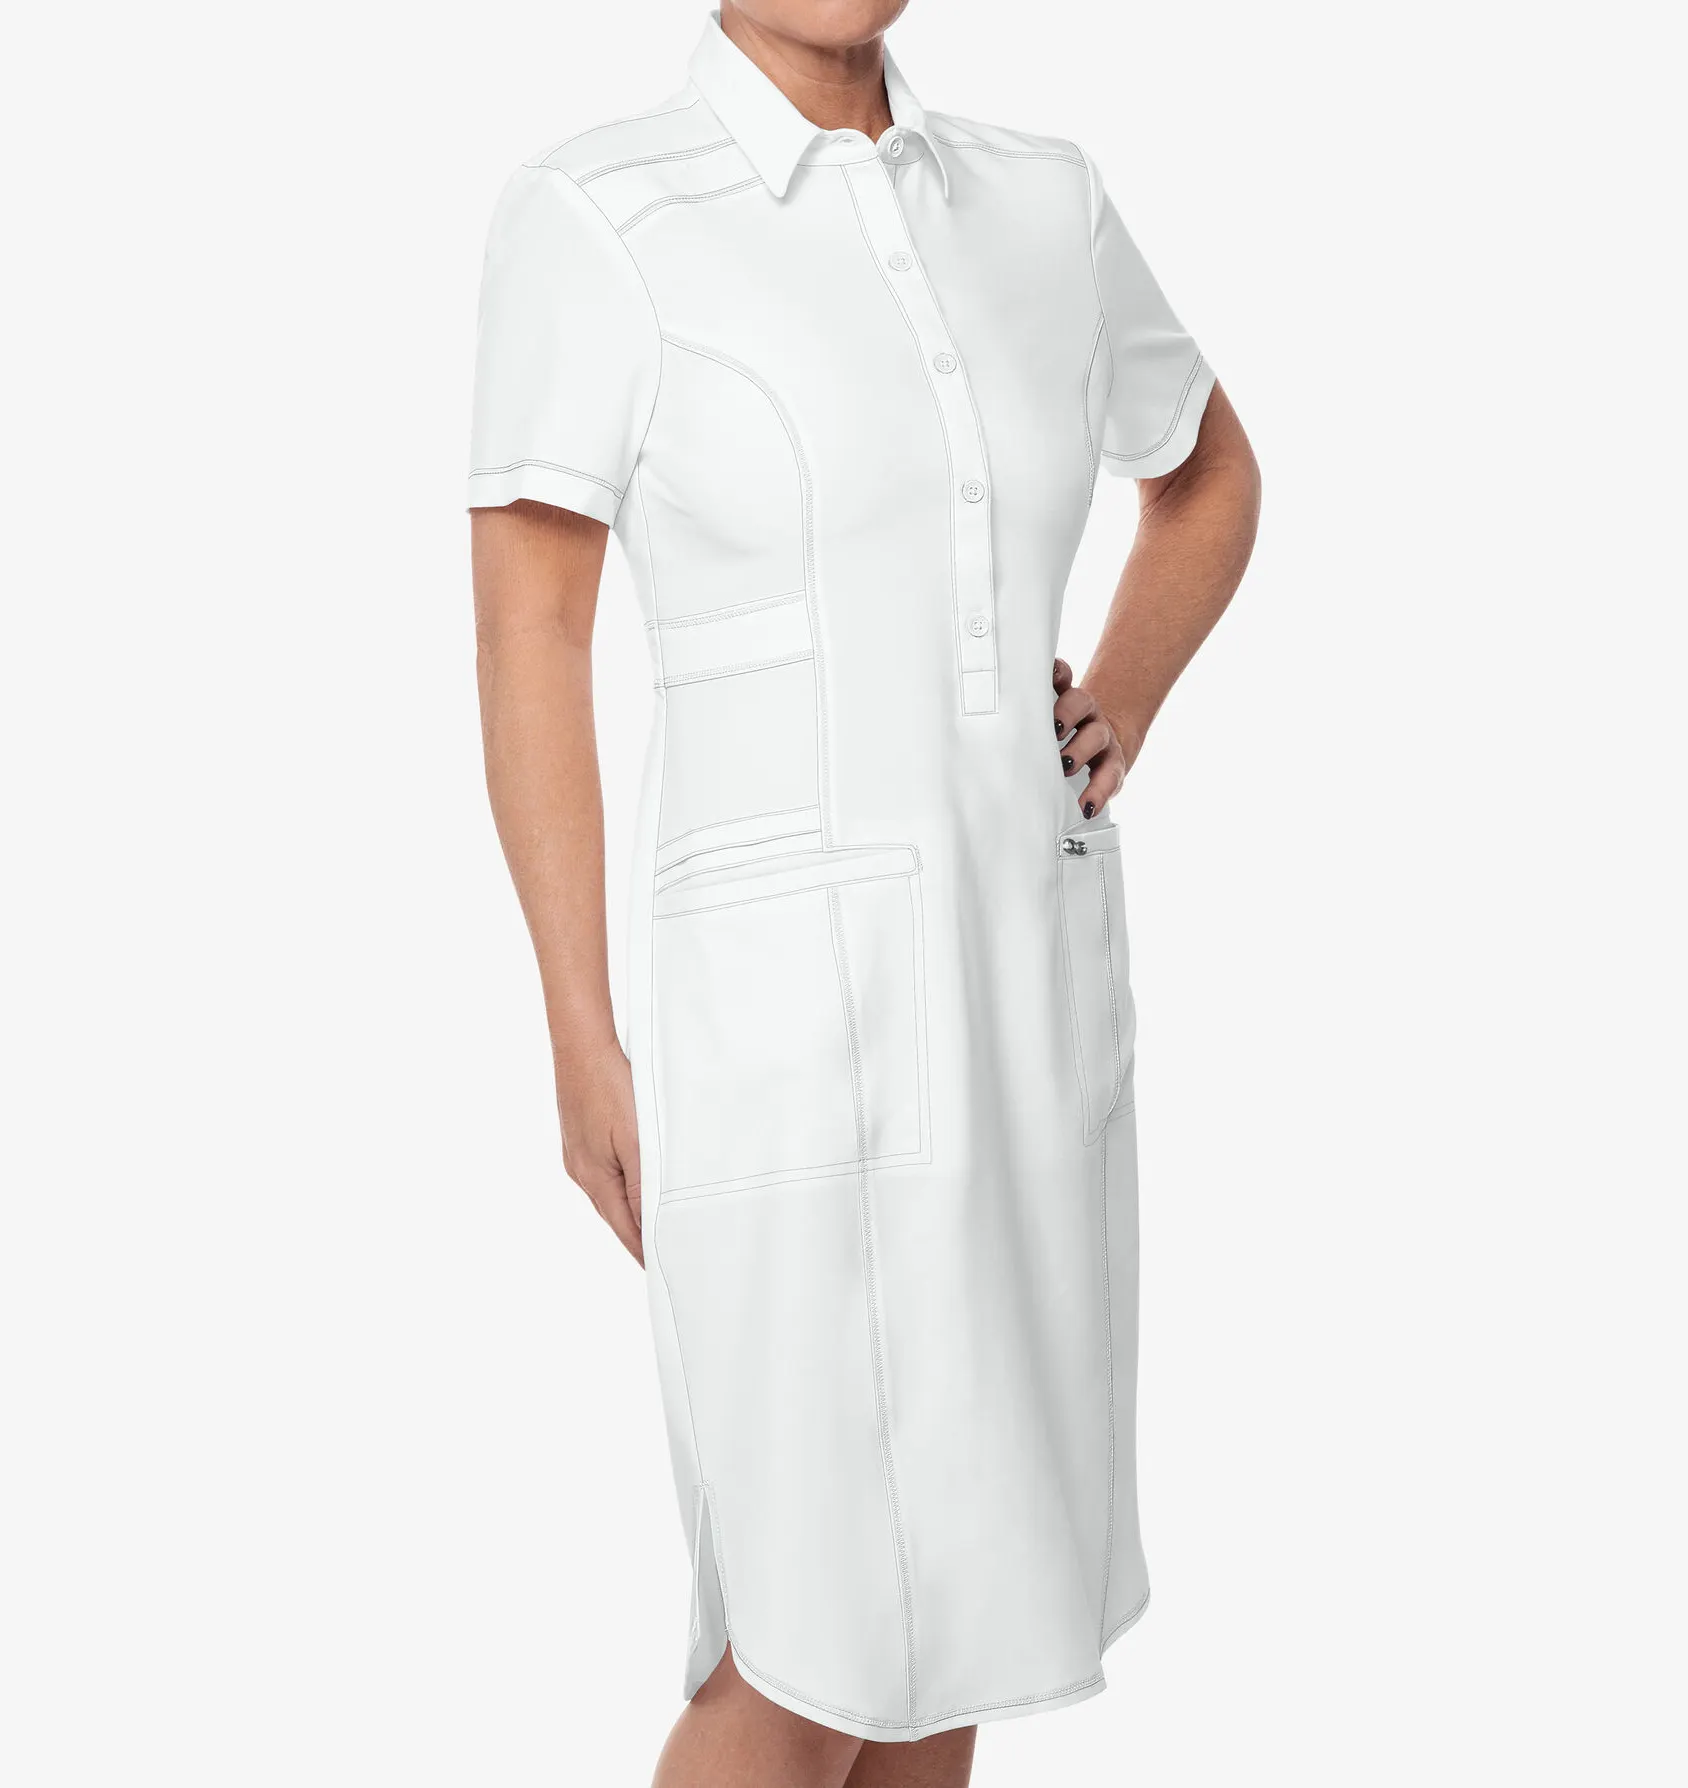 الجملة زي مستشفى الطبية طويل القامة ثوب النساء موحدة اللباس النساء الطبية ممرضة الدعك اللباس مع جيوب